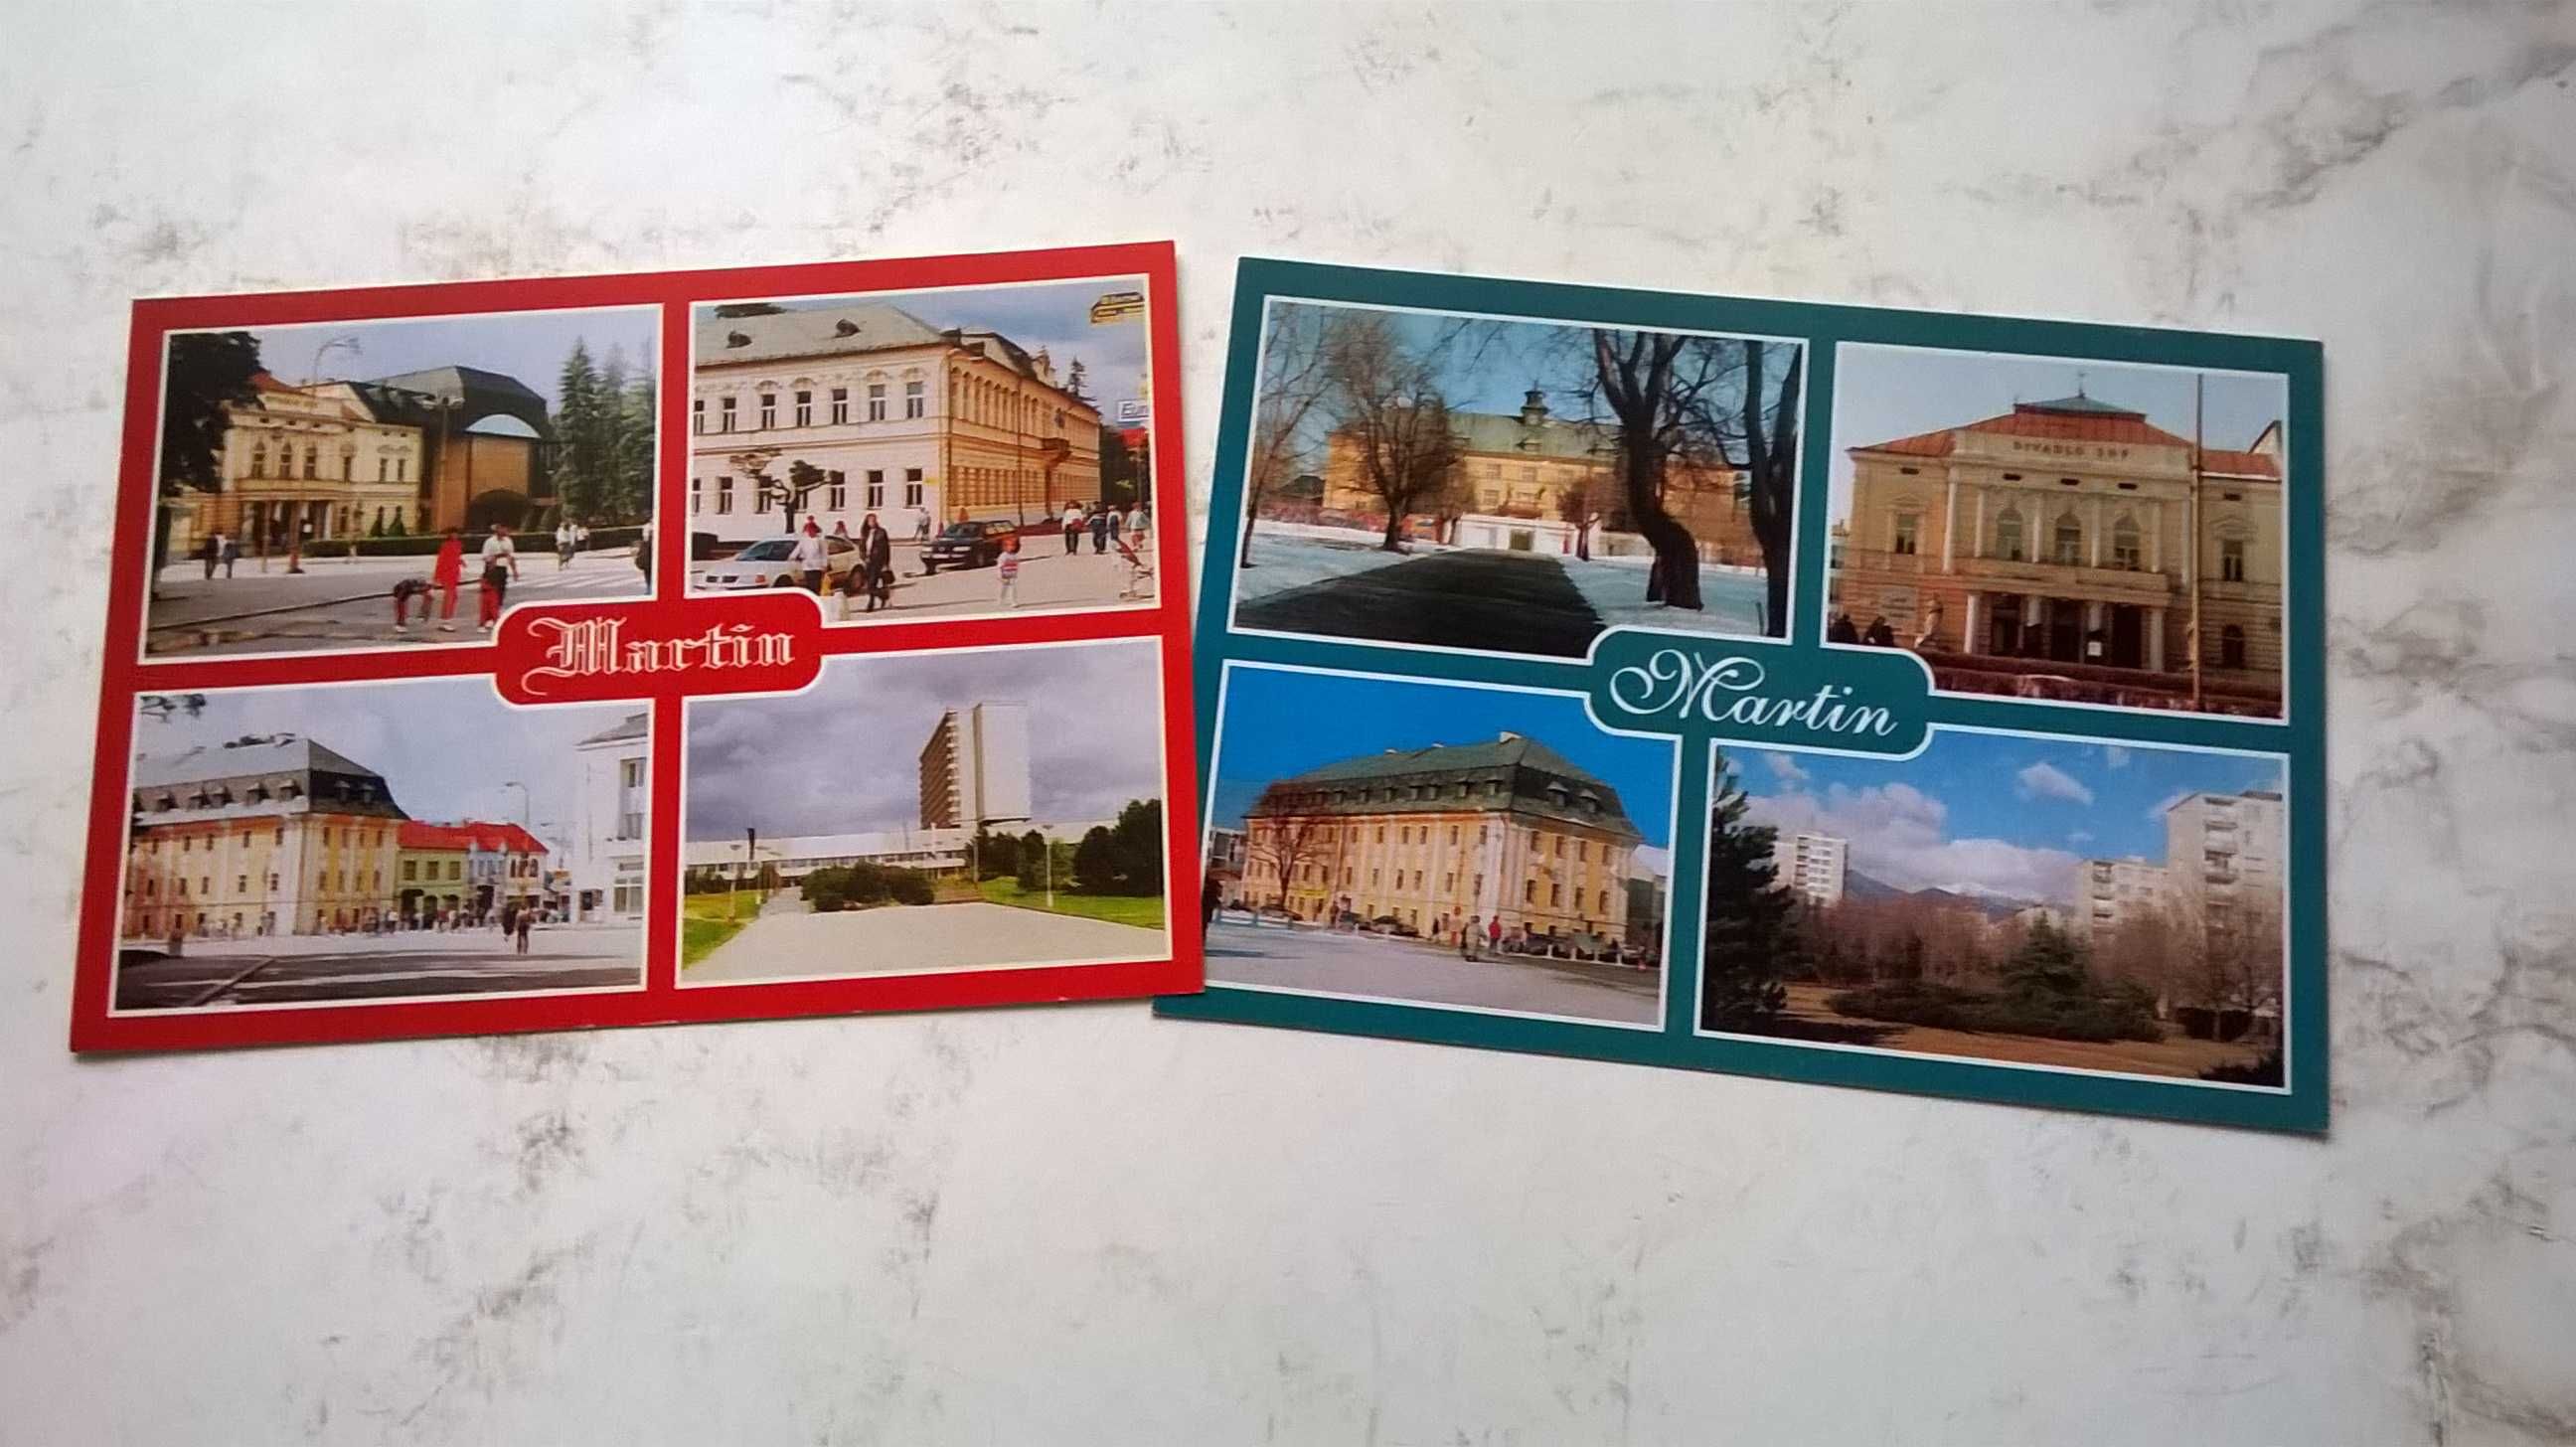 SŁOWACJA: Banska Bystrica: Martin; Trencin - widokówki (pocztówki)